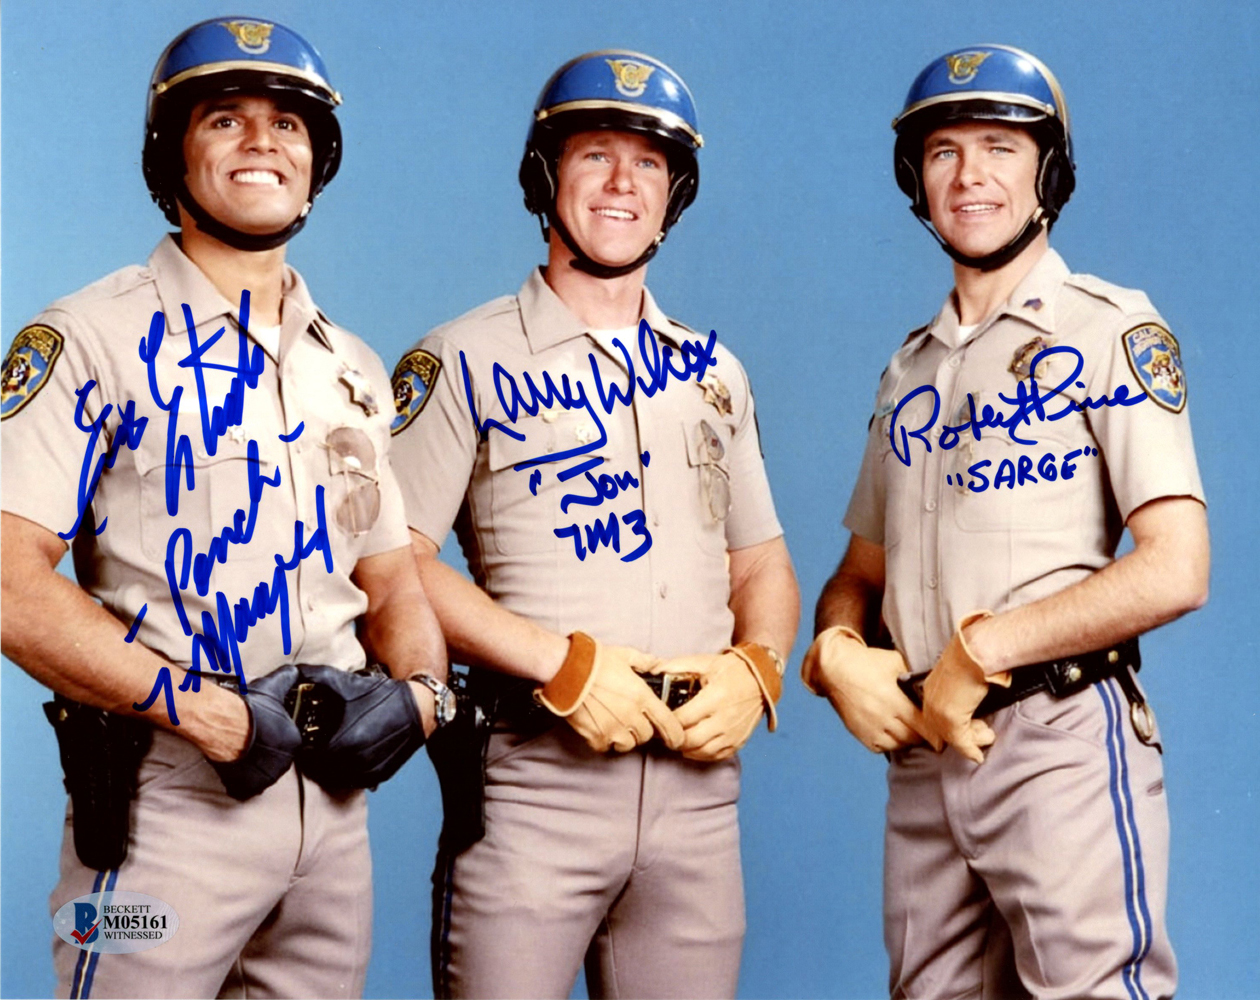 Erik Estrada, Larry Wilcox & Robert Pine Autographed Chips 8x10 Photo BAS